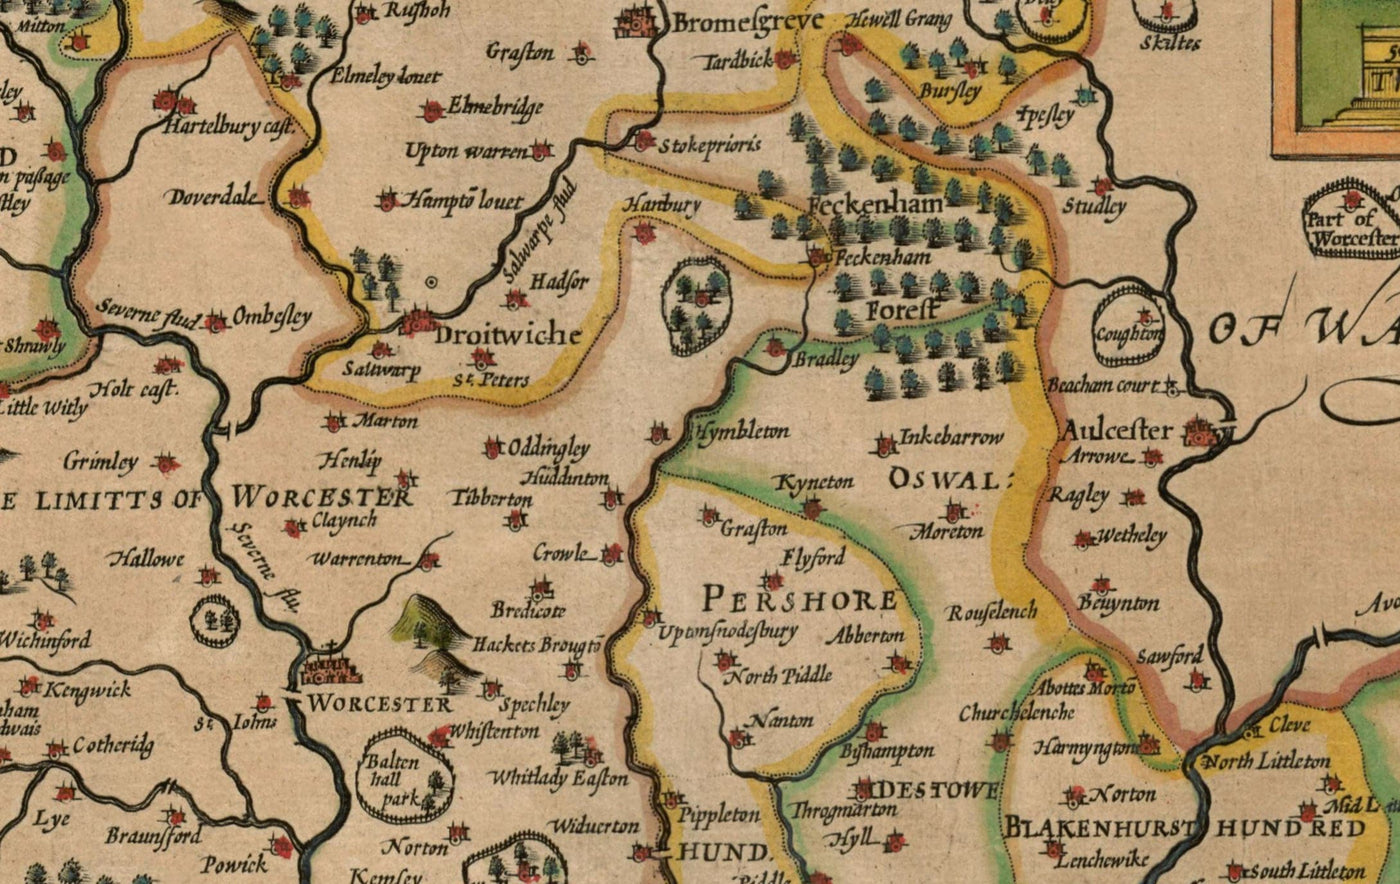 Alte Karte von Worcestershire im Jahre 1611 von John Speed ​​- Worcester, Bromsgrove, Kidderminster, Malvern, Droitwich